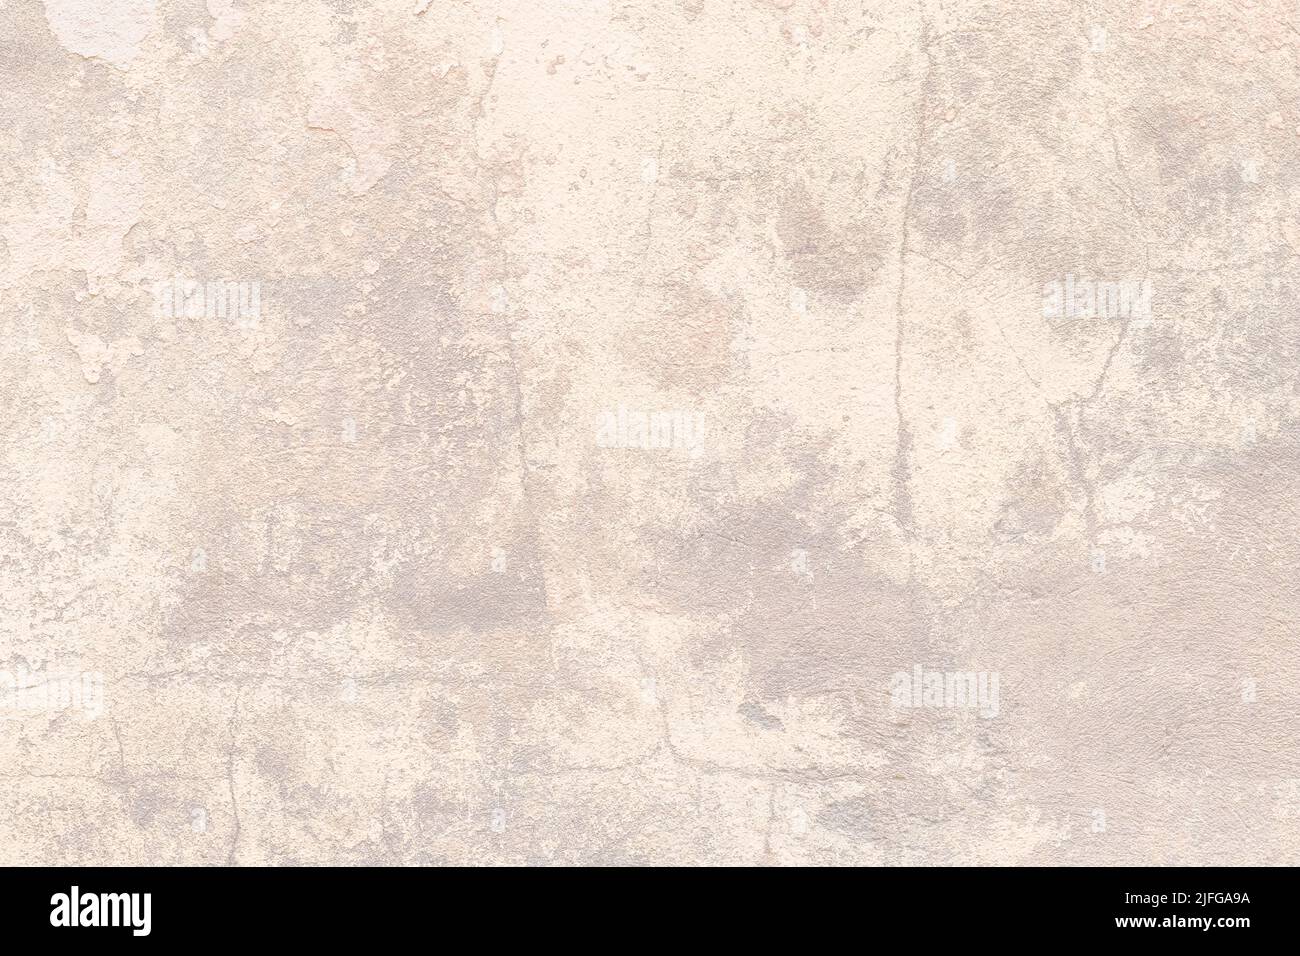 Textura beton beige, fondo de hormigón marrón claro, superficie de pared de cemento. Estuco, yeso. Espacio en blanco. Diseño de fondo. Fondo de pantalla grunge natural, nosotros Foto de stock